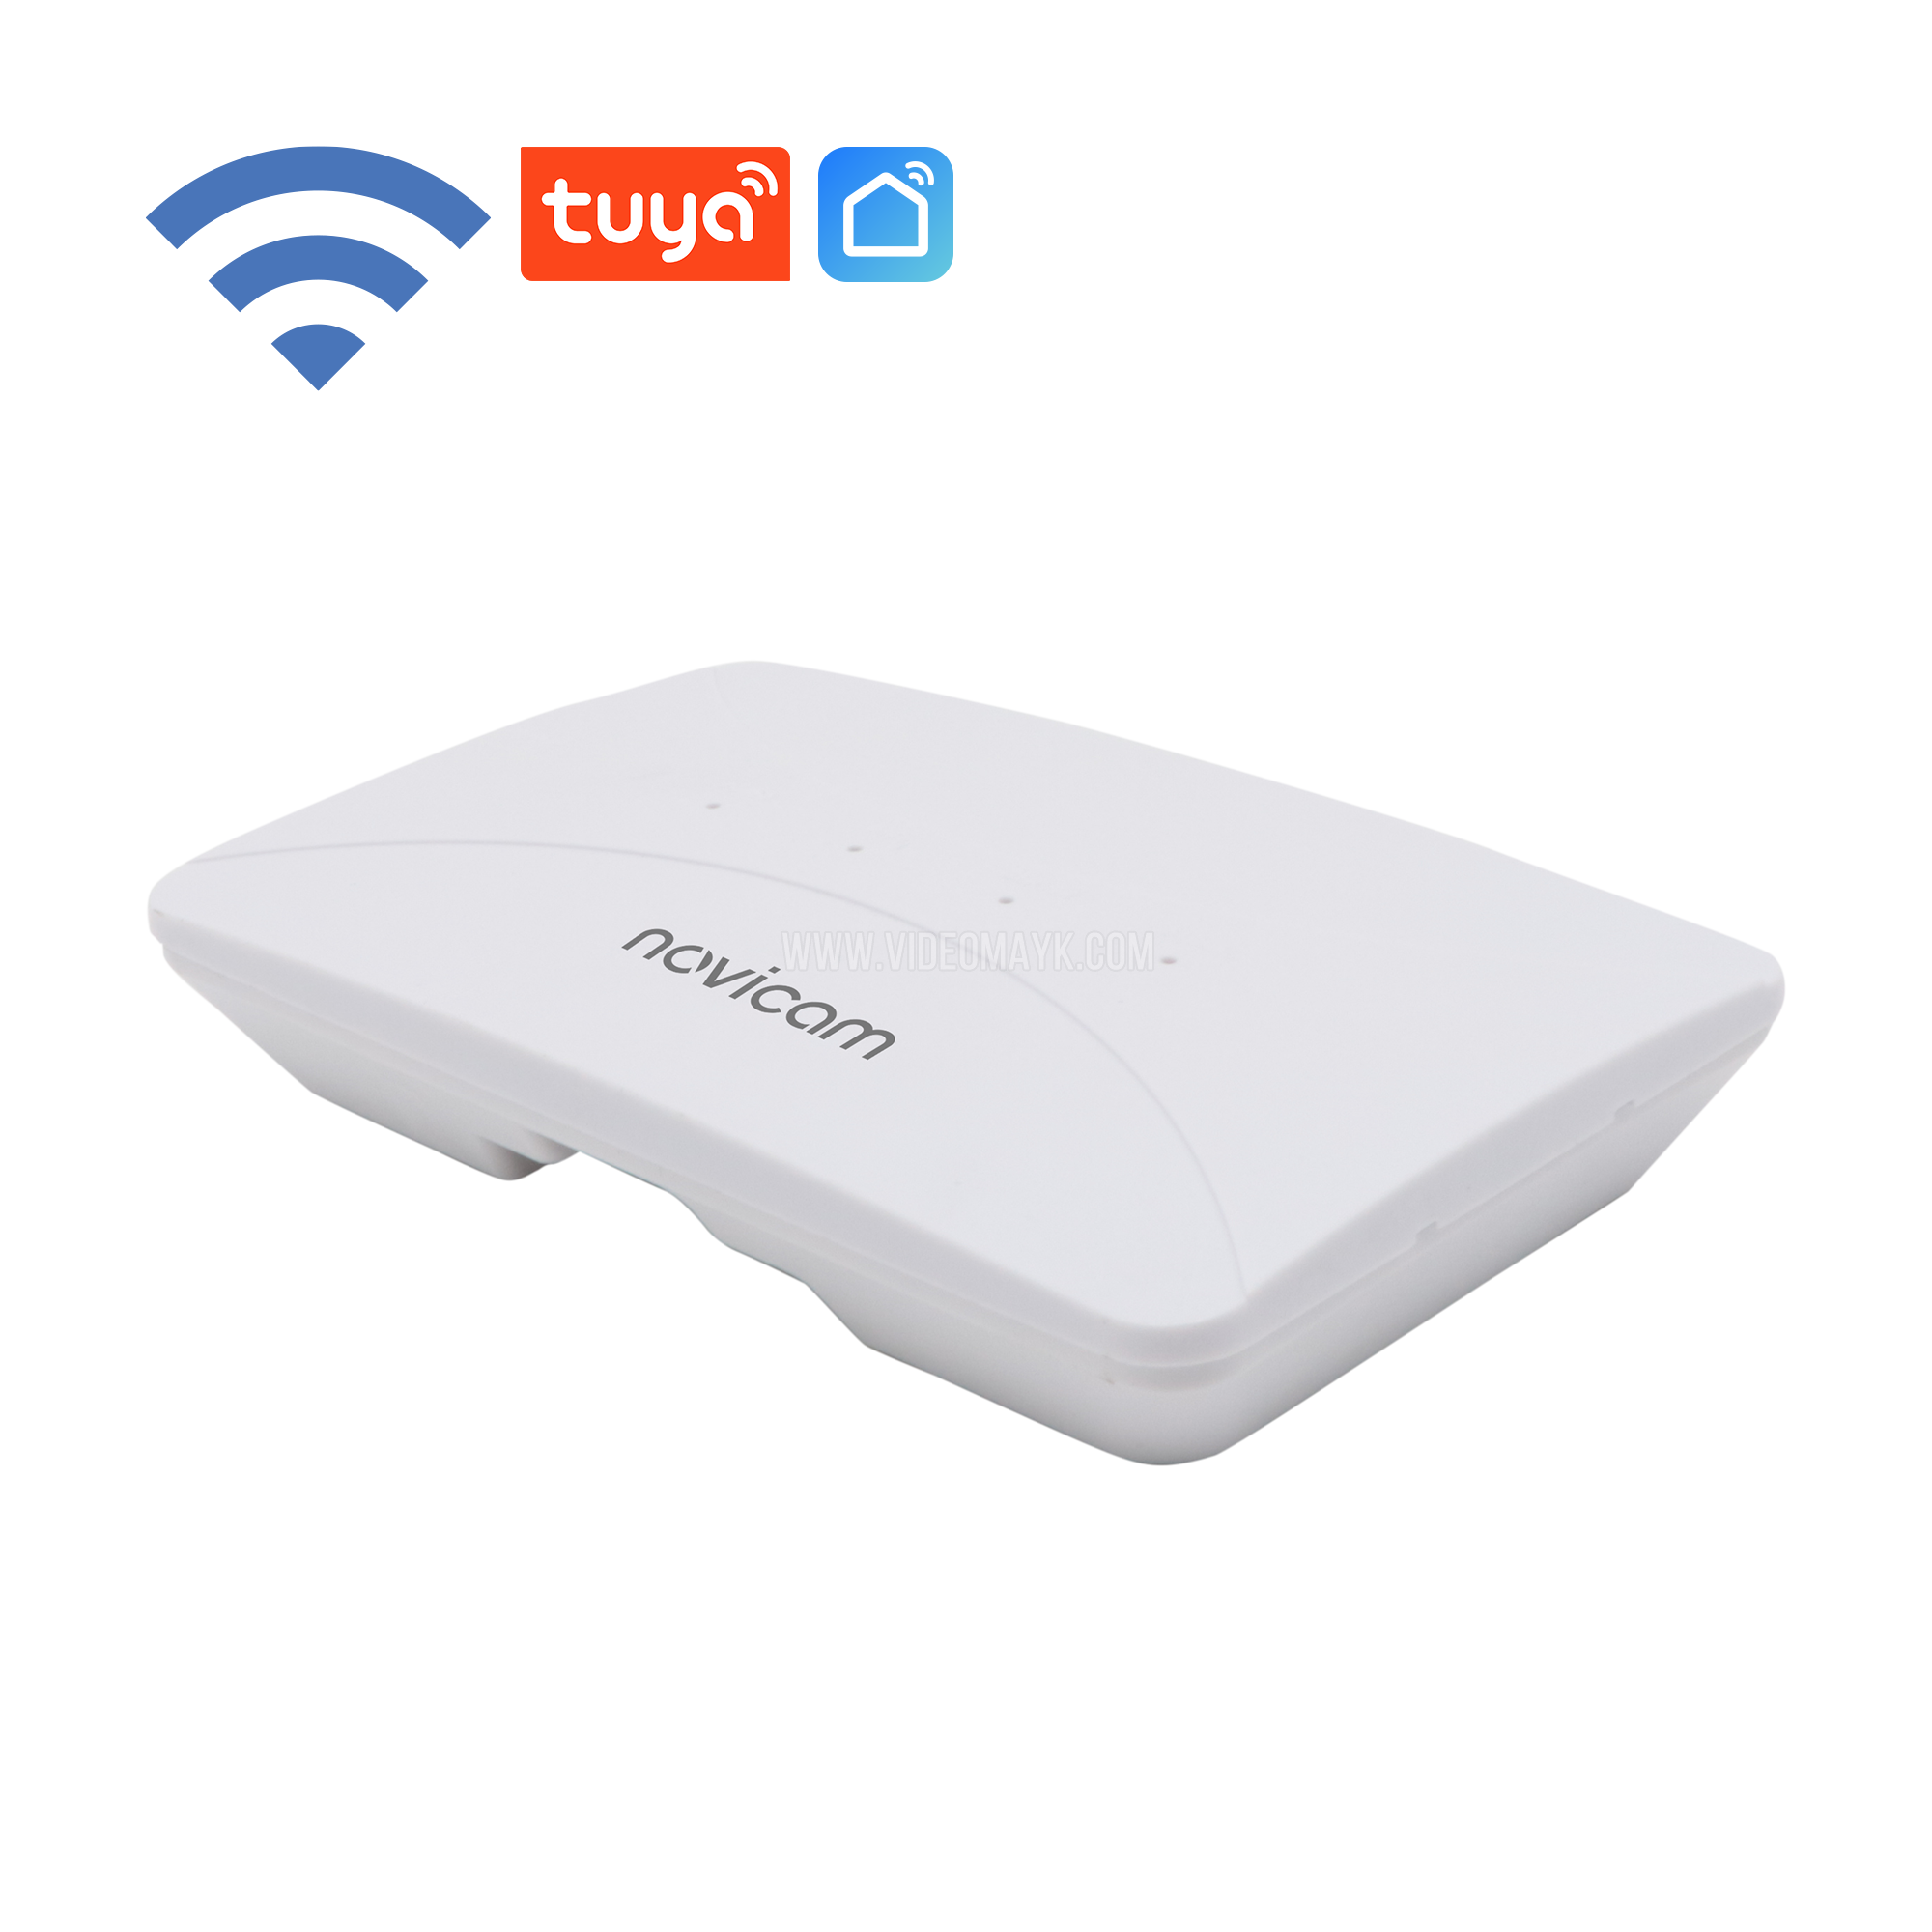 IP BOX - IP конвертер для переадресации вызова на смартфон-любой домофон теперь с Wi-Fi